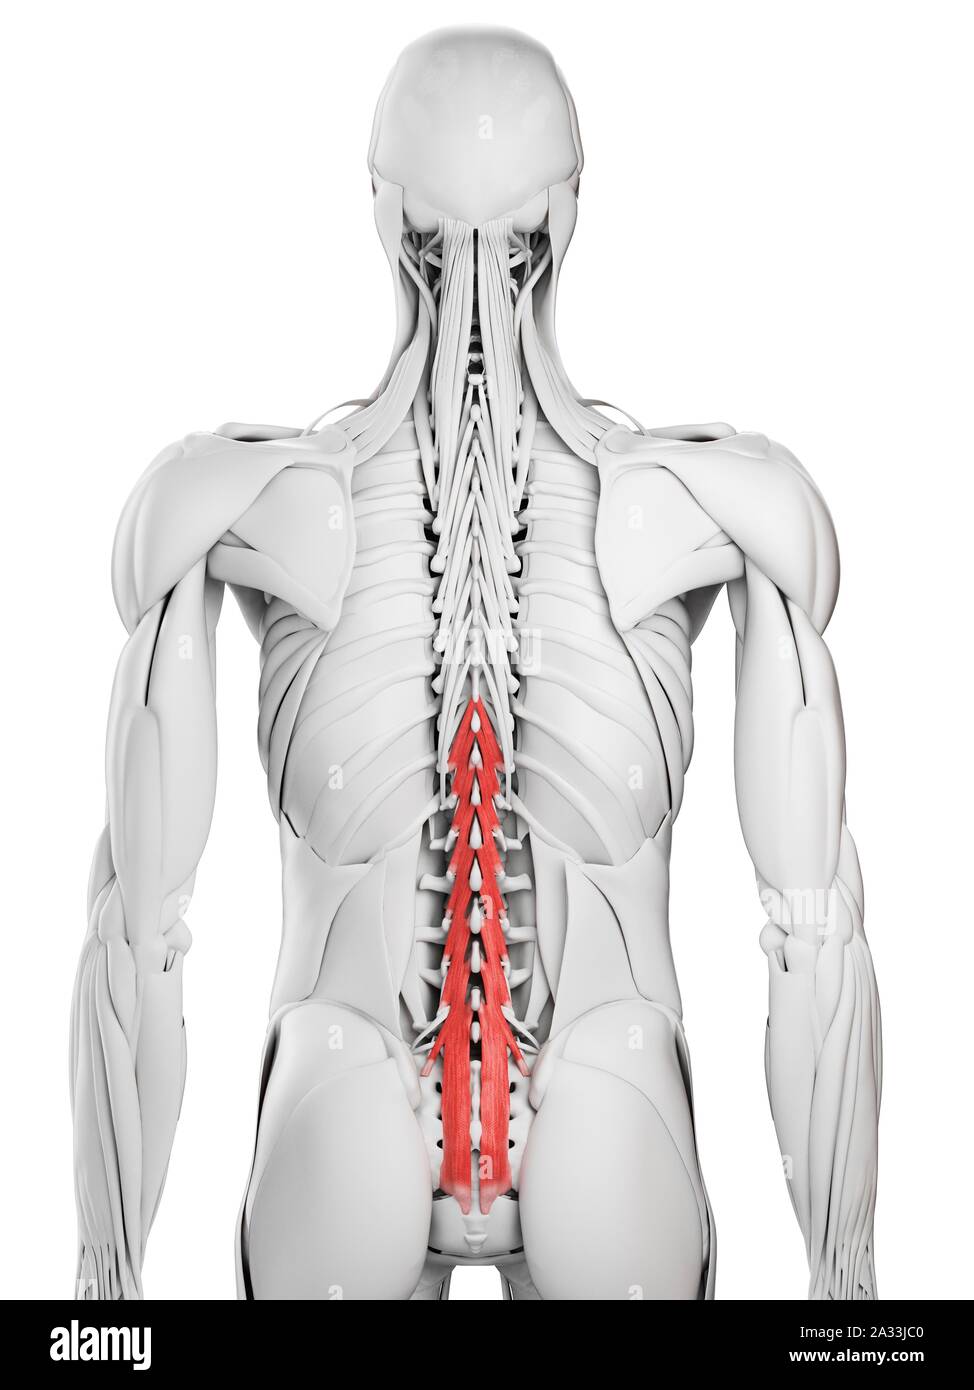 Multifidus muscle, illustration Stock Photo - Alamy